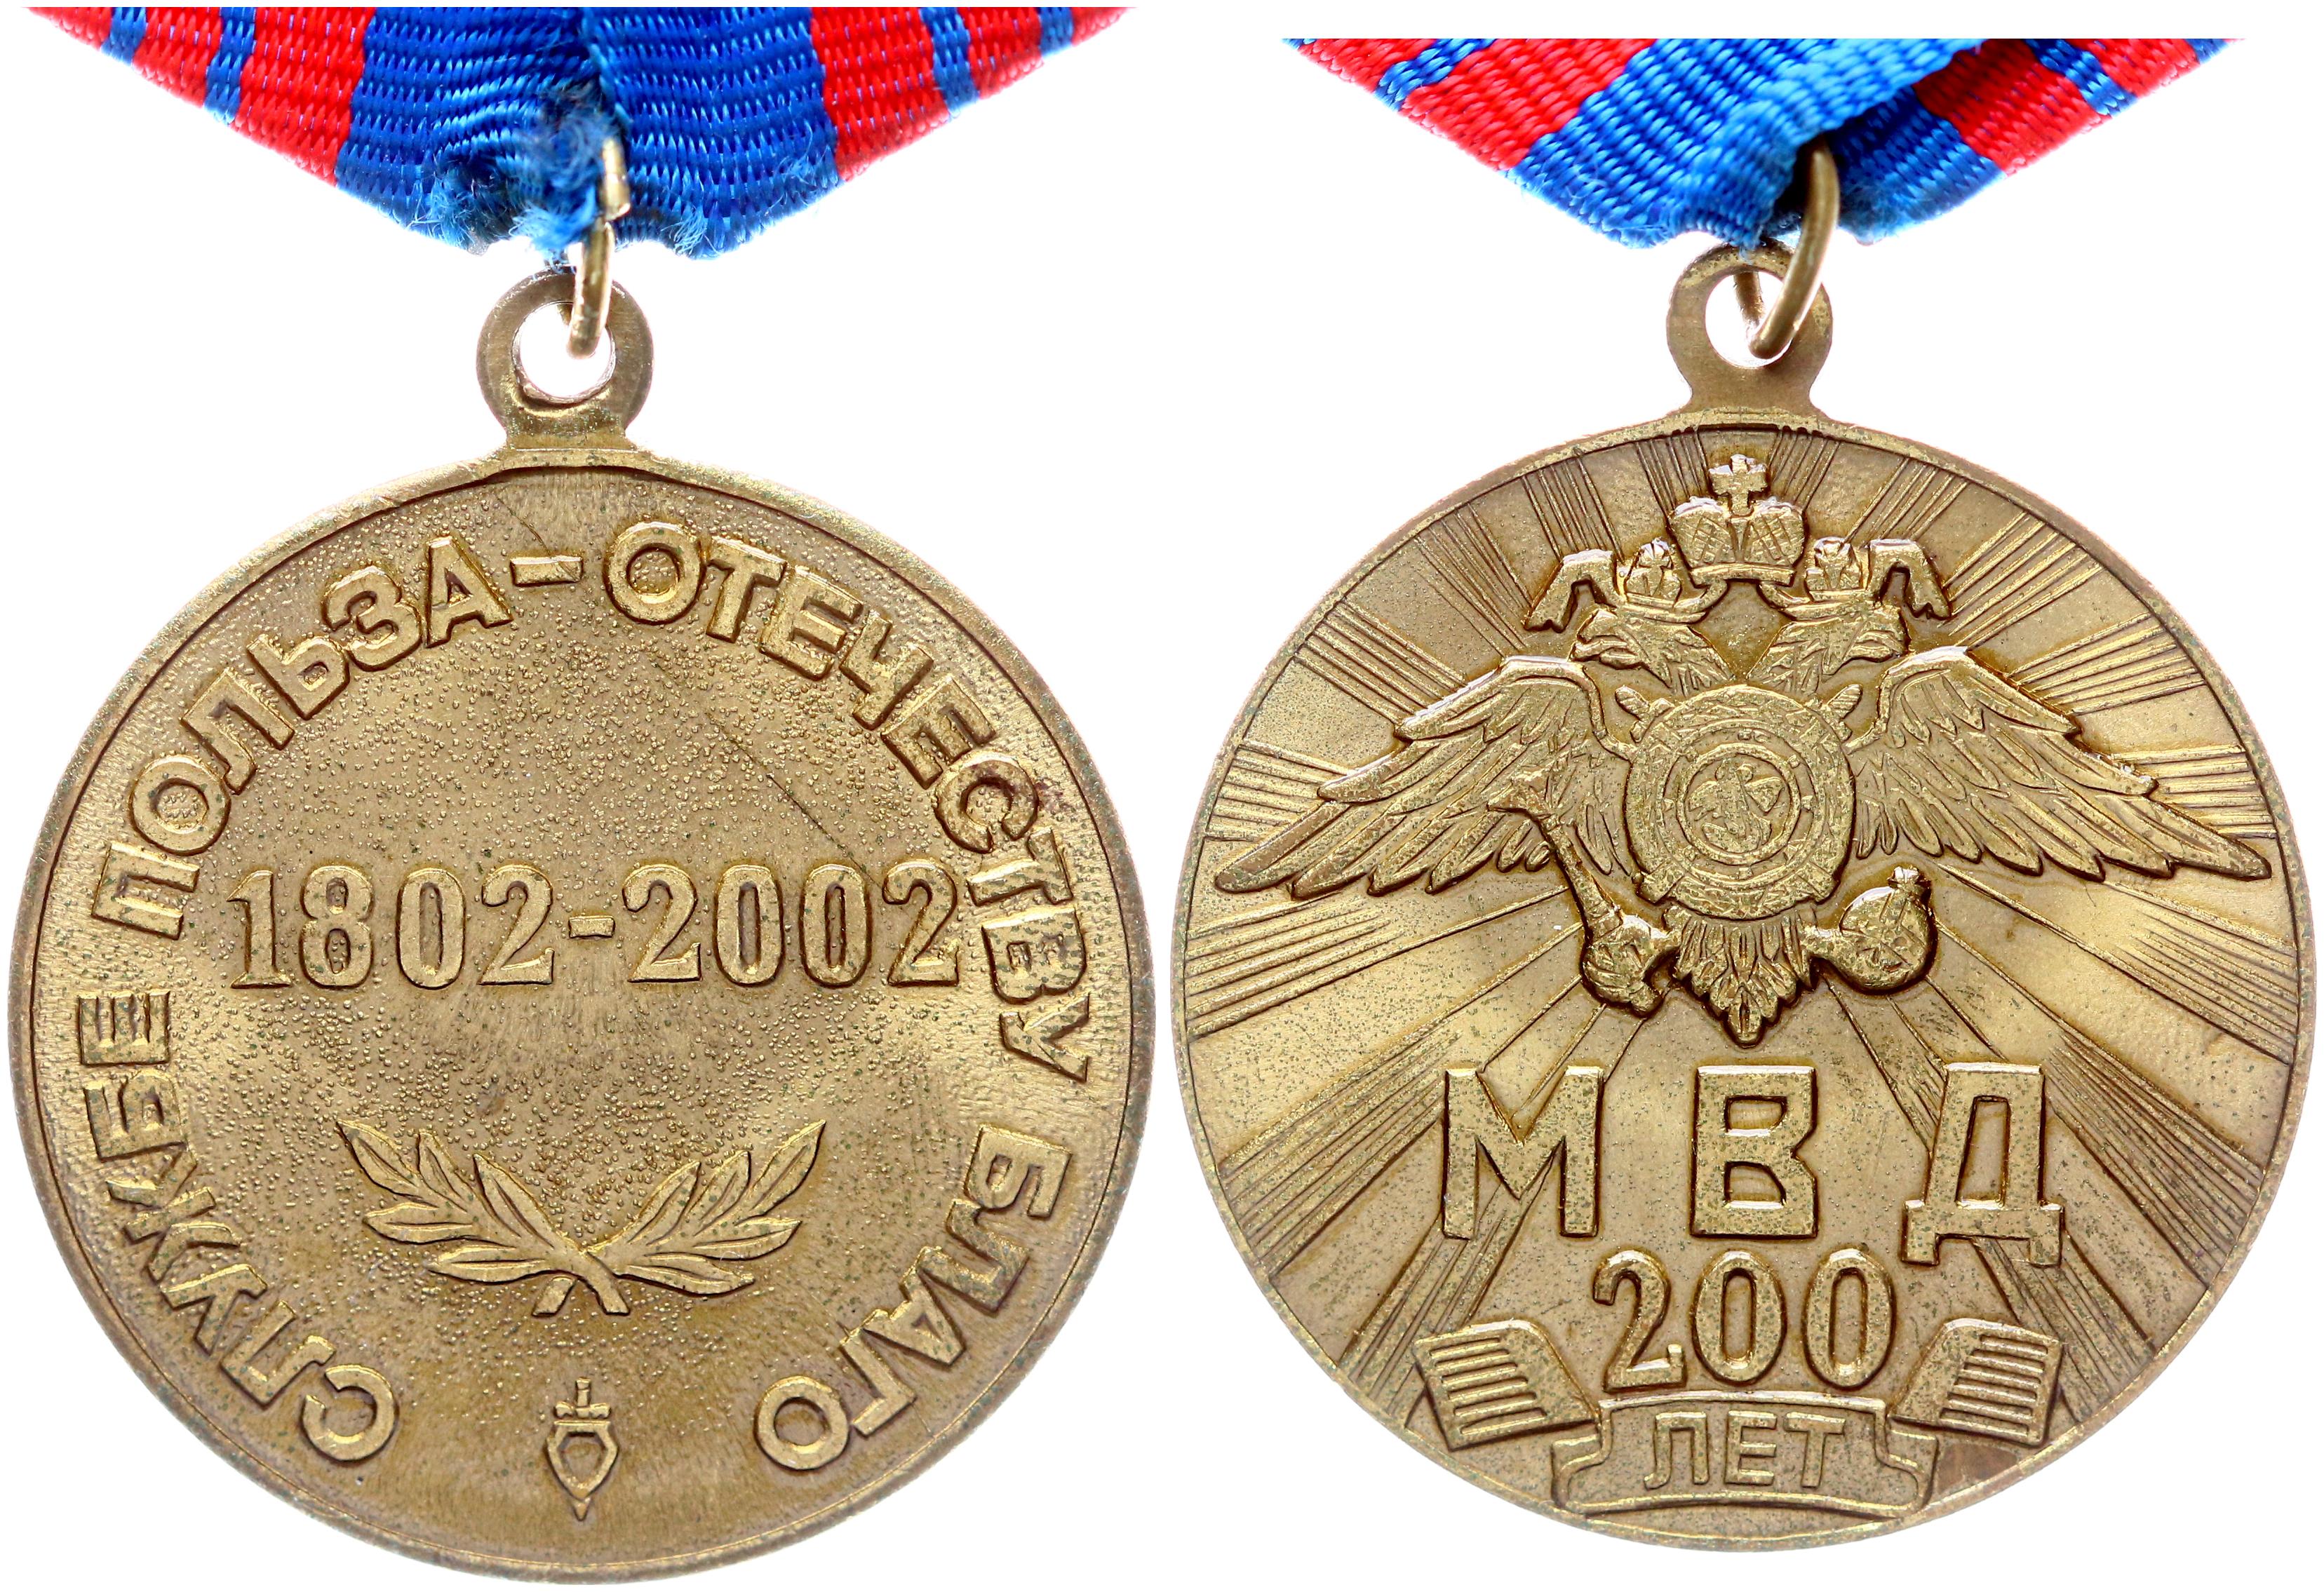 Принести пользу отечеству. Медаль 200 лет МВД России. Медаль 1802-2002. Медали РФ. Медаль за пользу Отечеству.